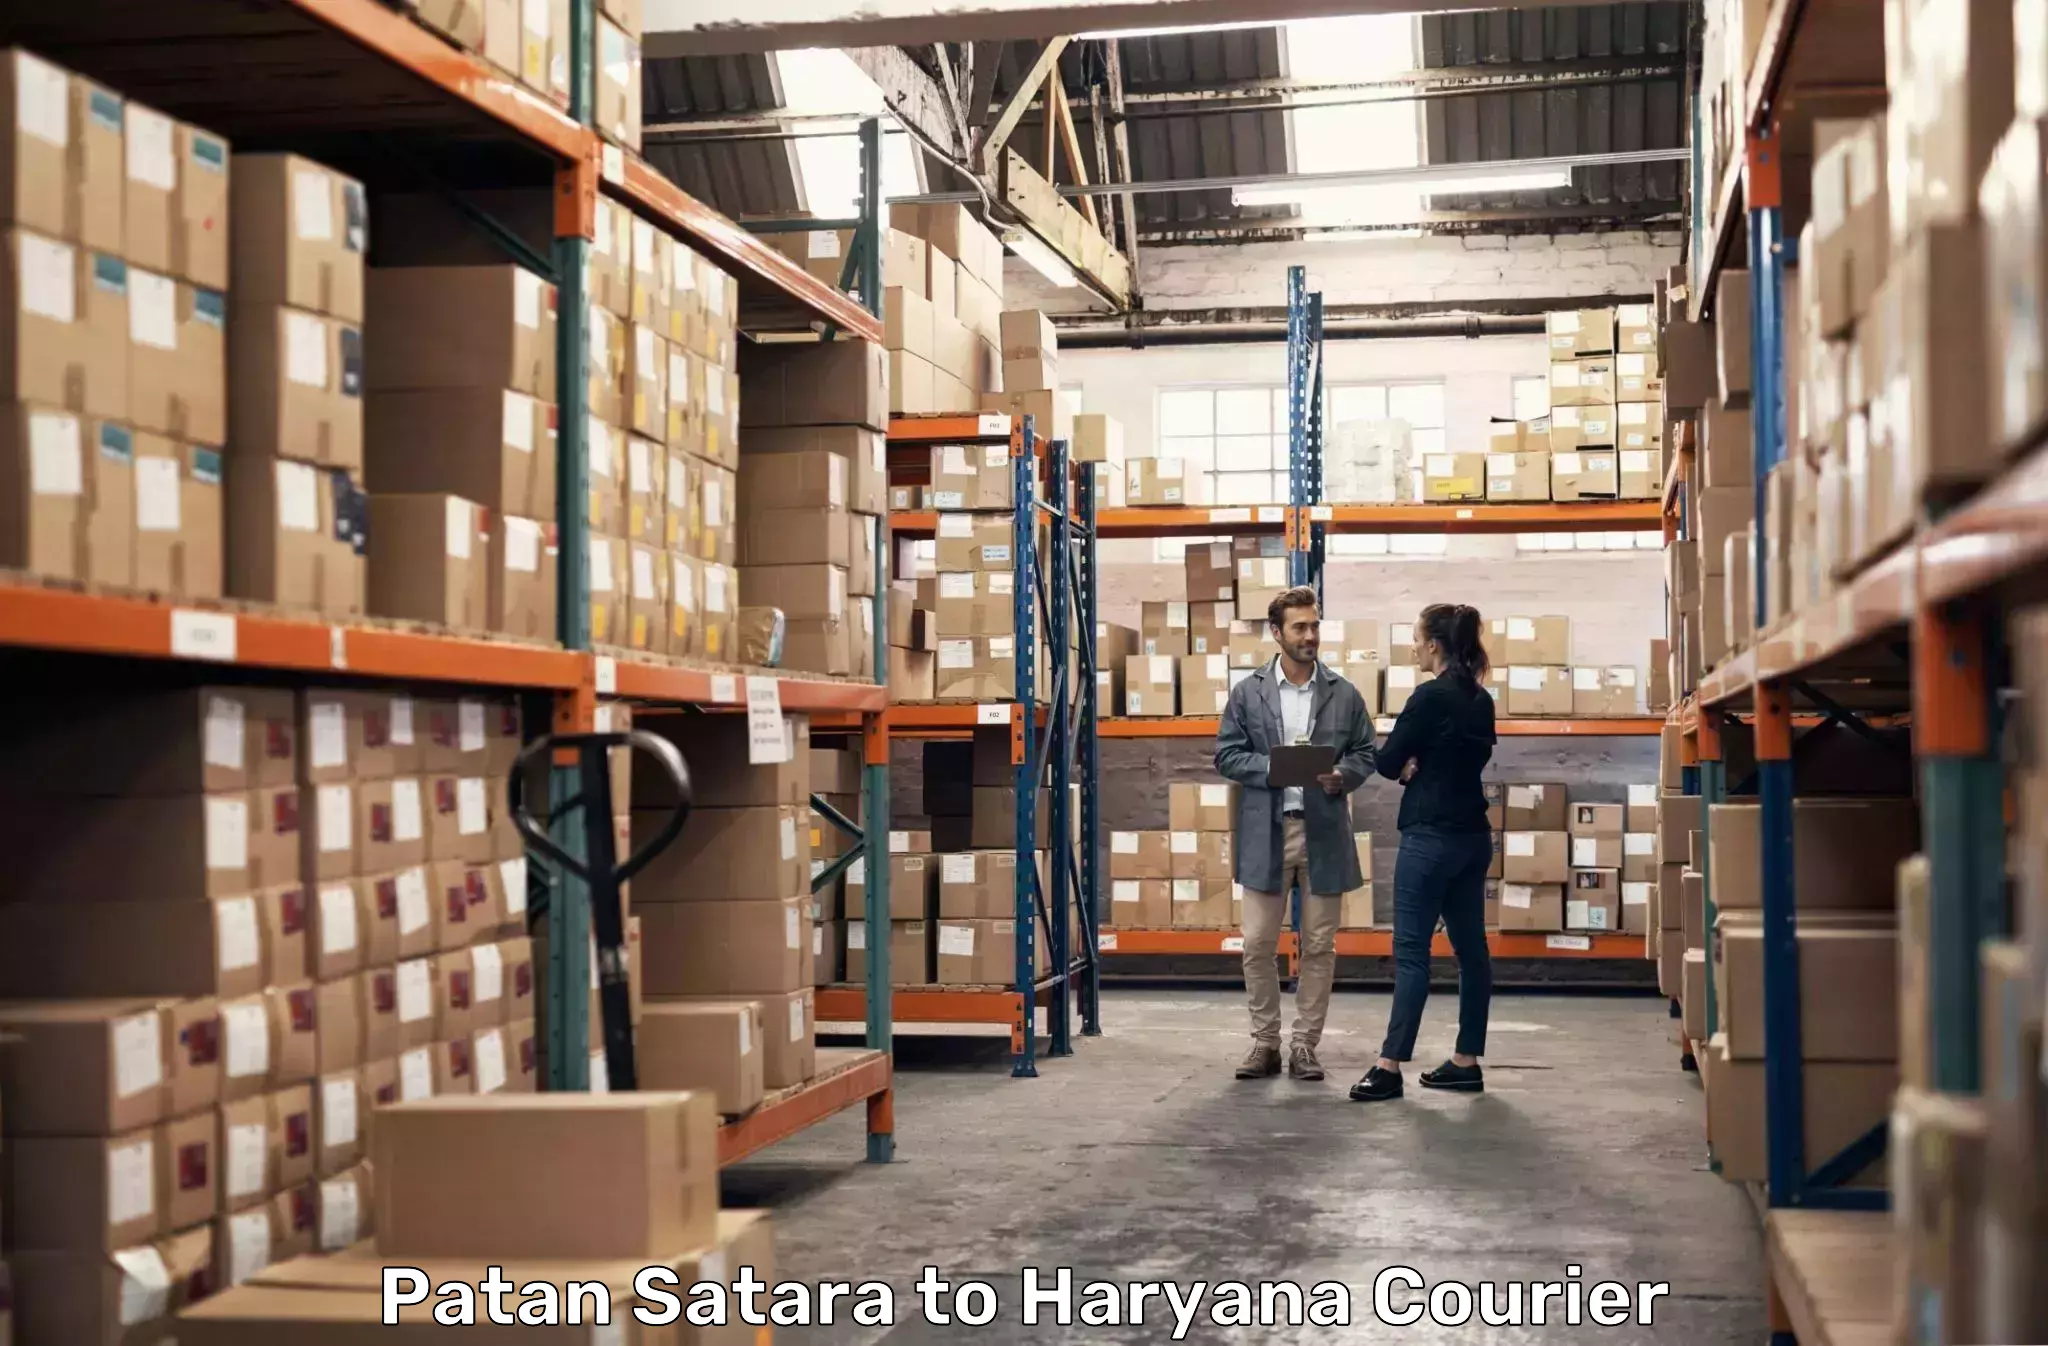 Regular parcel service Patan Satara to Dharuhera